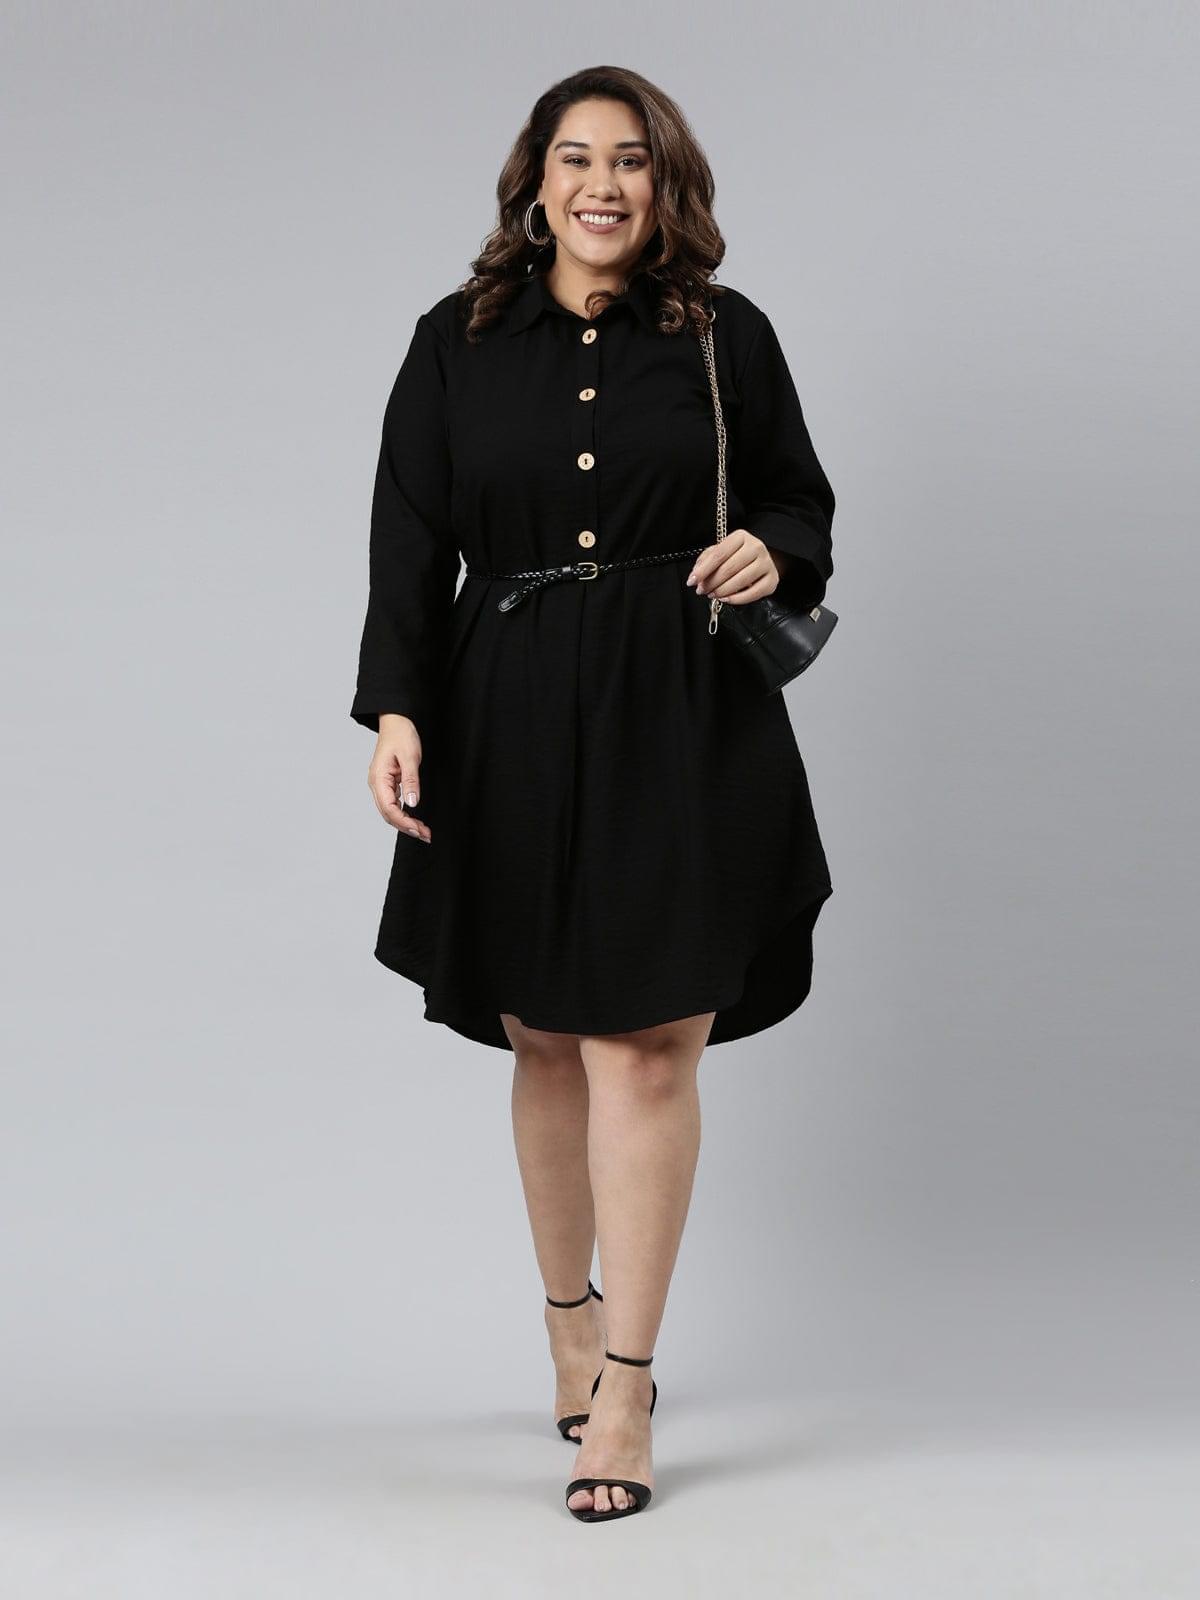 buy black solid  formal shirt dress on online